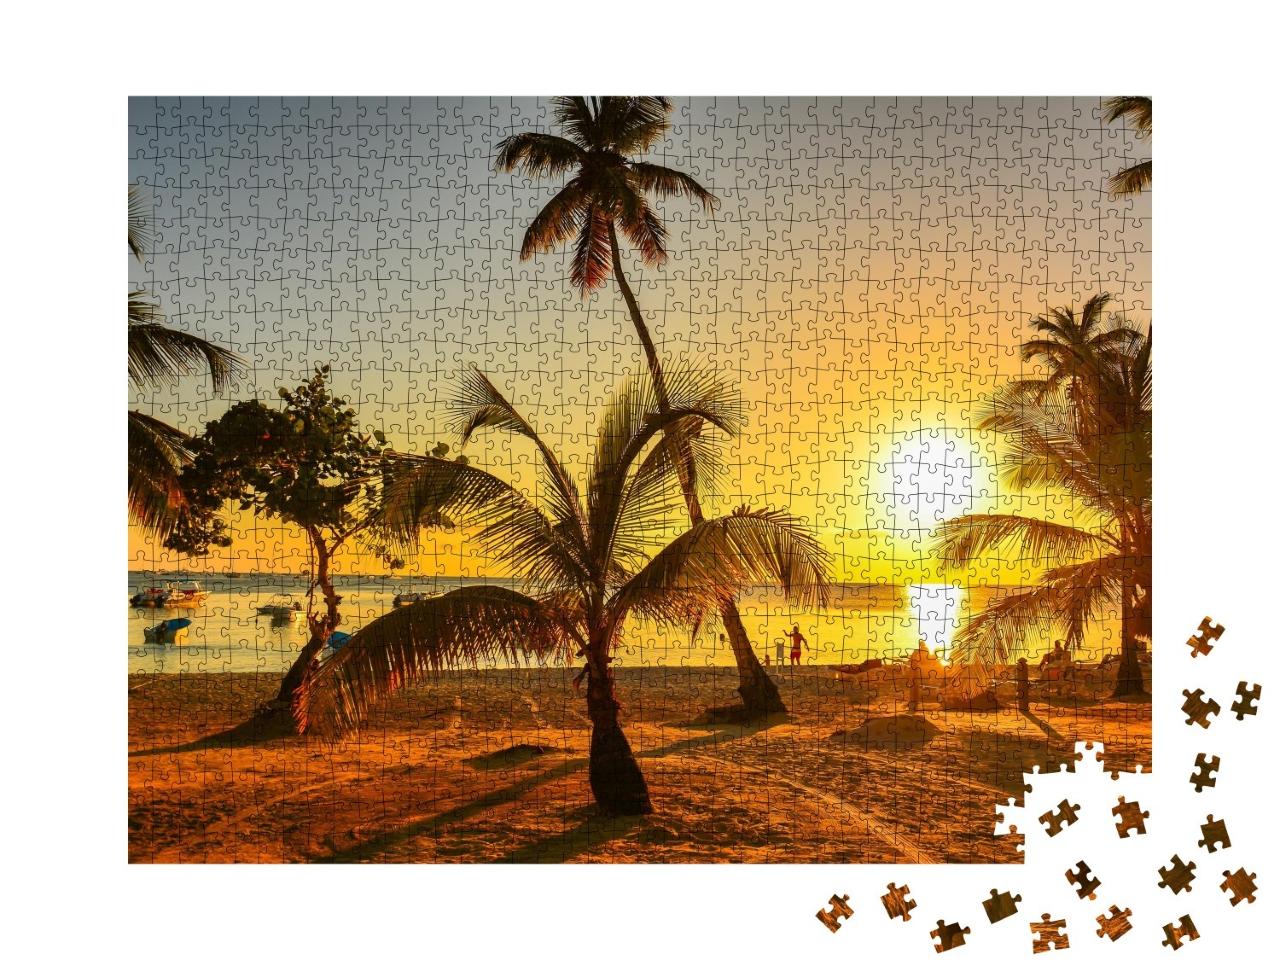 Puzzle de 1000 pièces « Coucher de soleil dans les Caraïbes, République dominicaine »